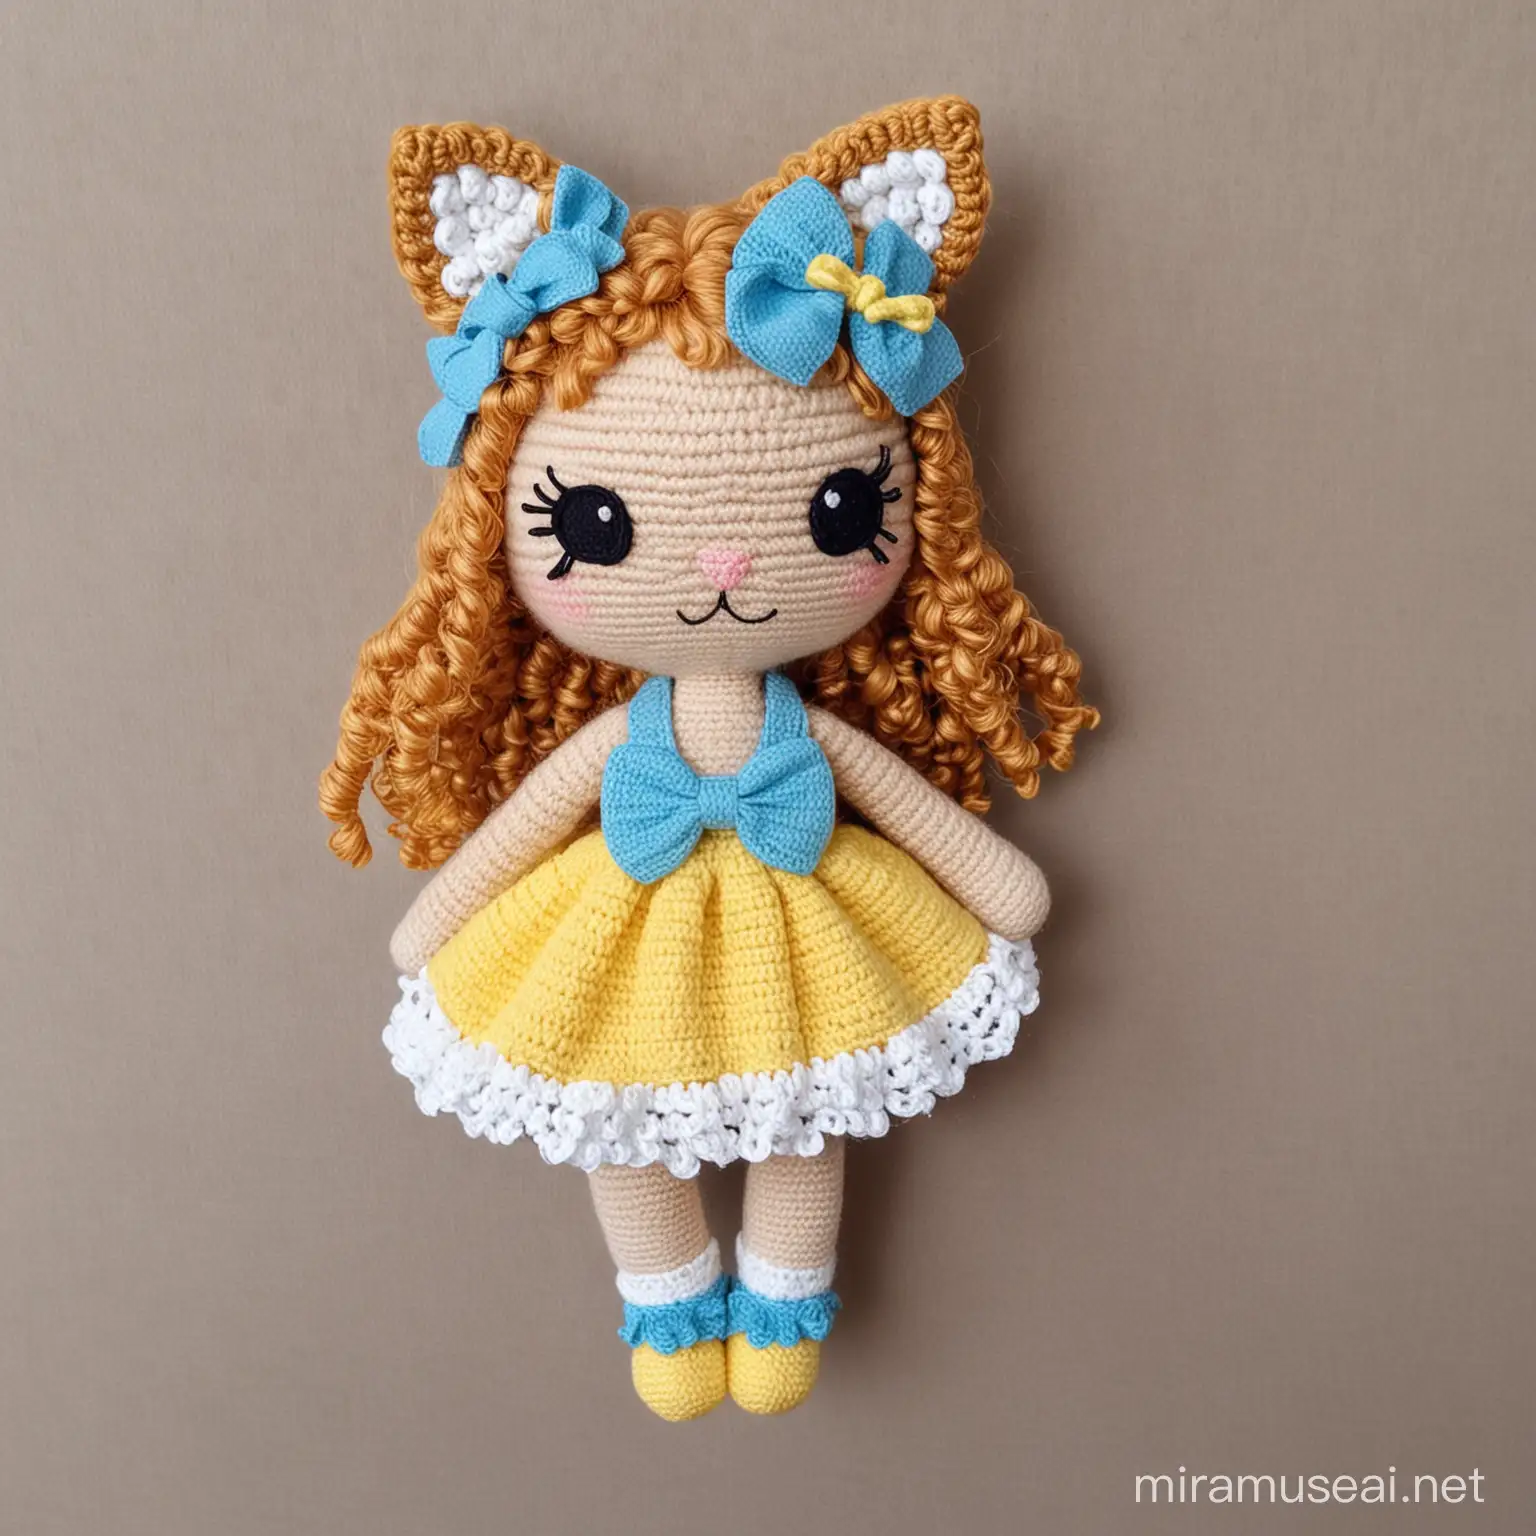 Amigurumi crochet Lovely cat little baby girl, light brown curli hair, cat ears, boho blue And lemon Skirt, light blue bow, blue shues